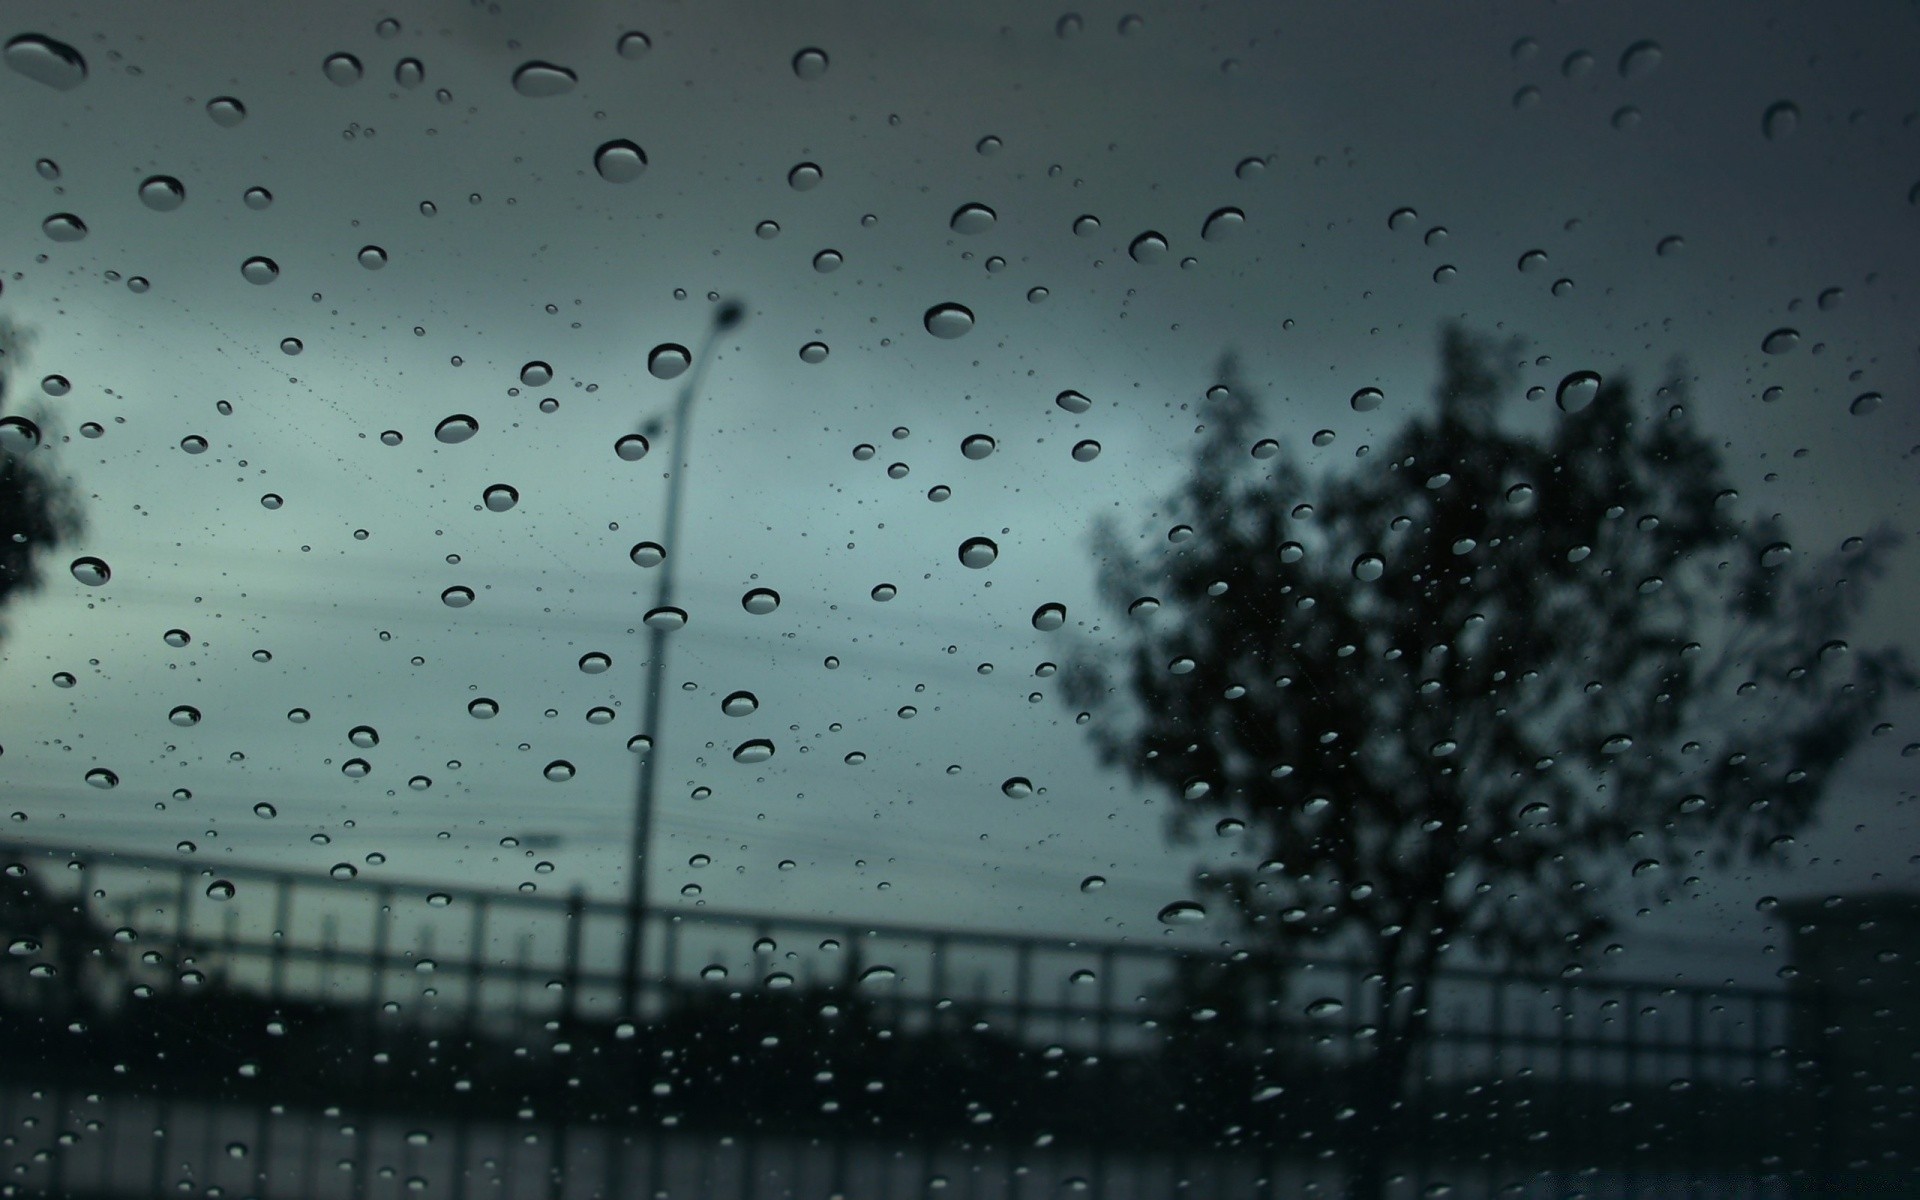 осень дождь падение мокрый капли дождей росы всплеск пузырь жидкость аннотация стекло чистые воды капли рабочего стола пить понятно текстура окна